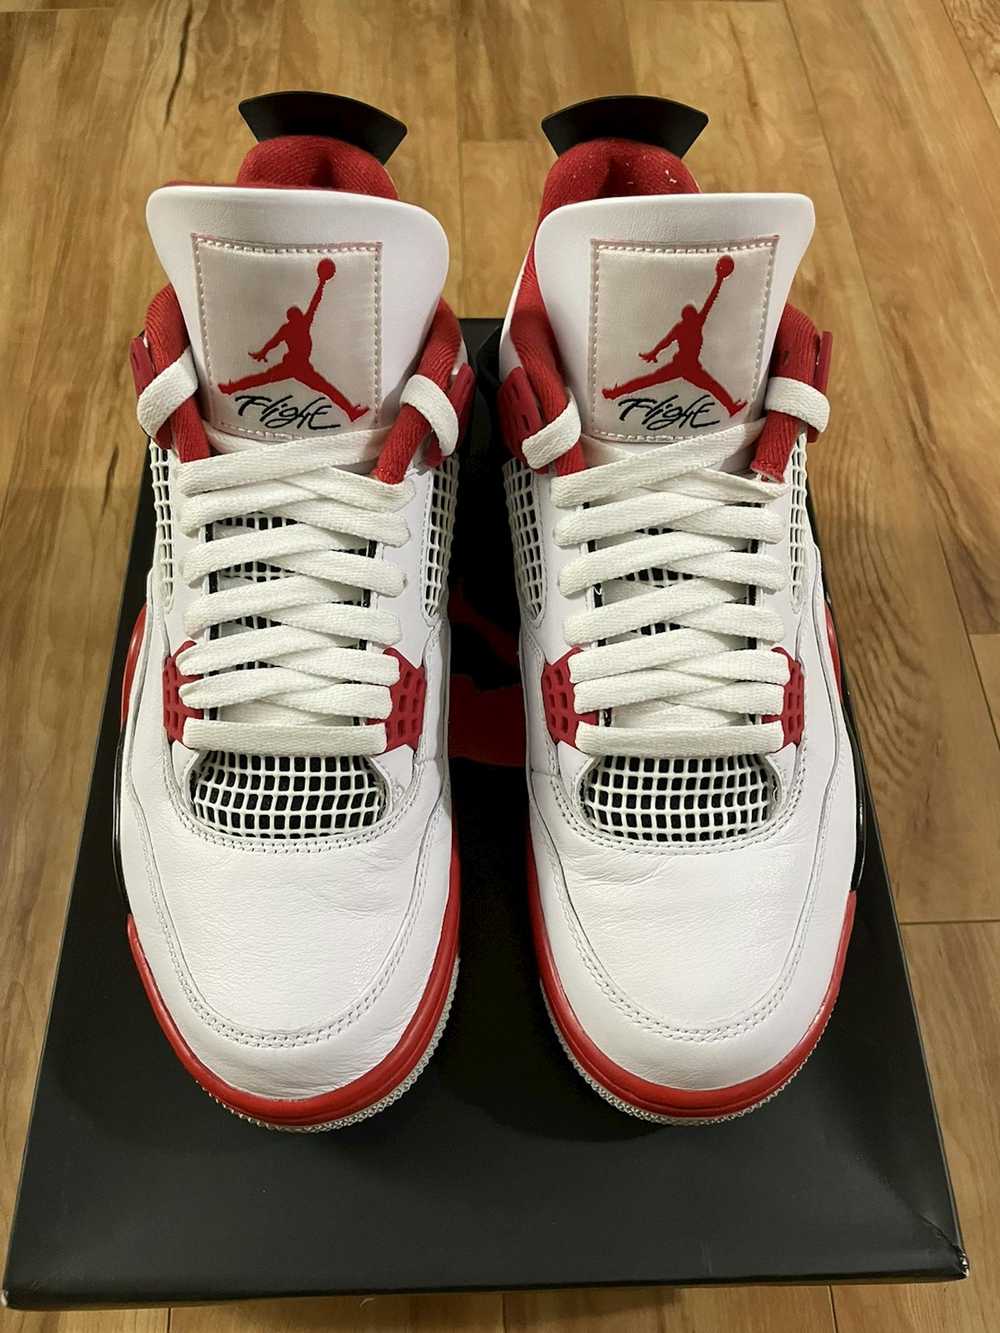 Jordan Brand Air Jordan 4 “Fire Red” - image 2